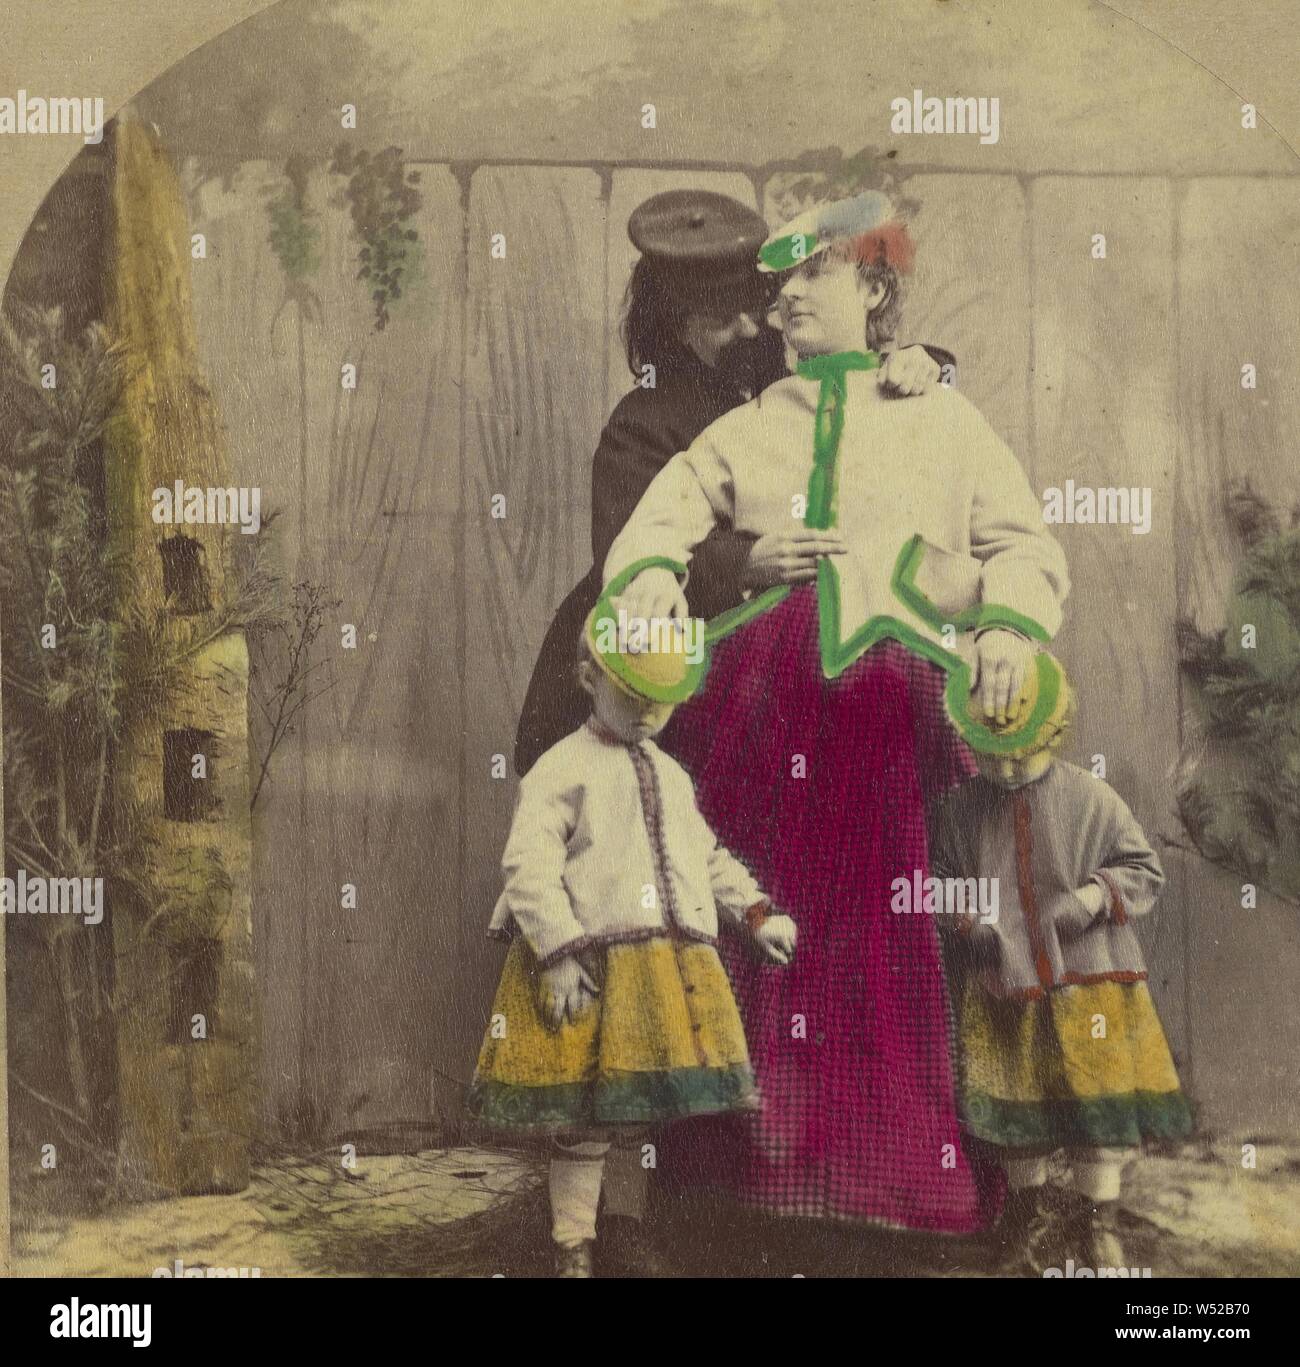 Infermiere 1860 immagini e fotografie stock ad alta risoluzione - Alamy